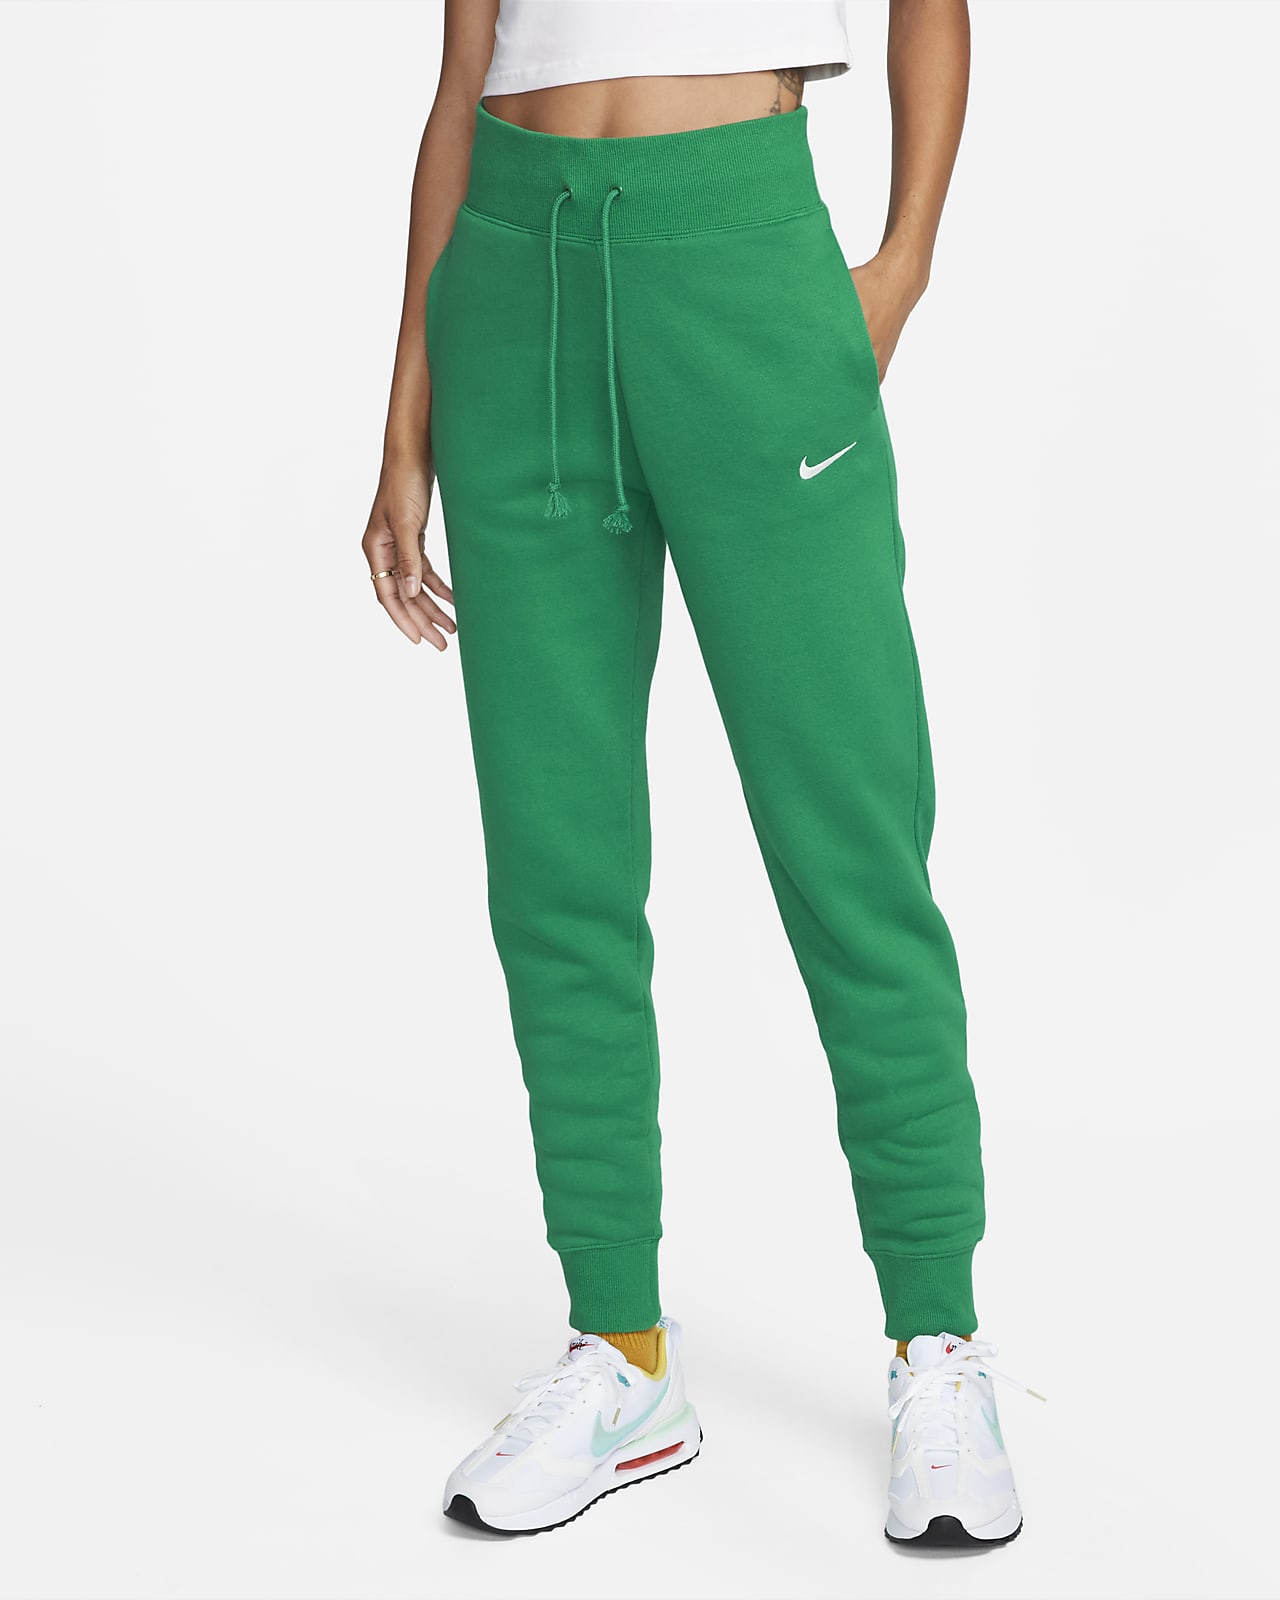 Phoenix Fleece Sportswear Nike Women\'s Joggers. High-Waisted